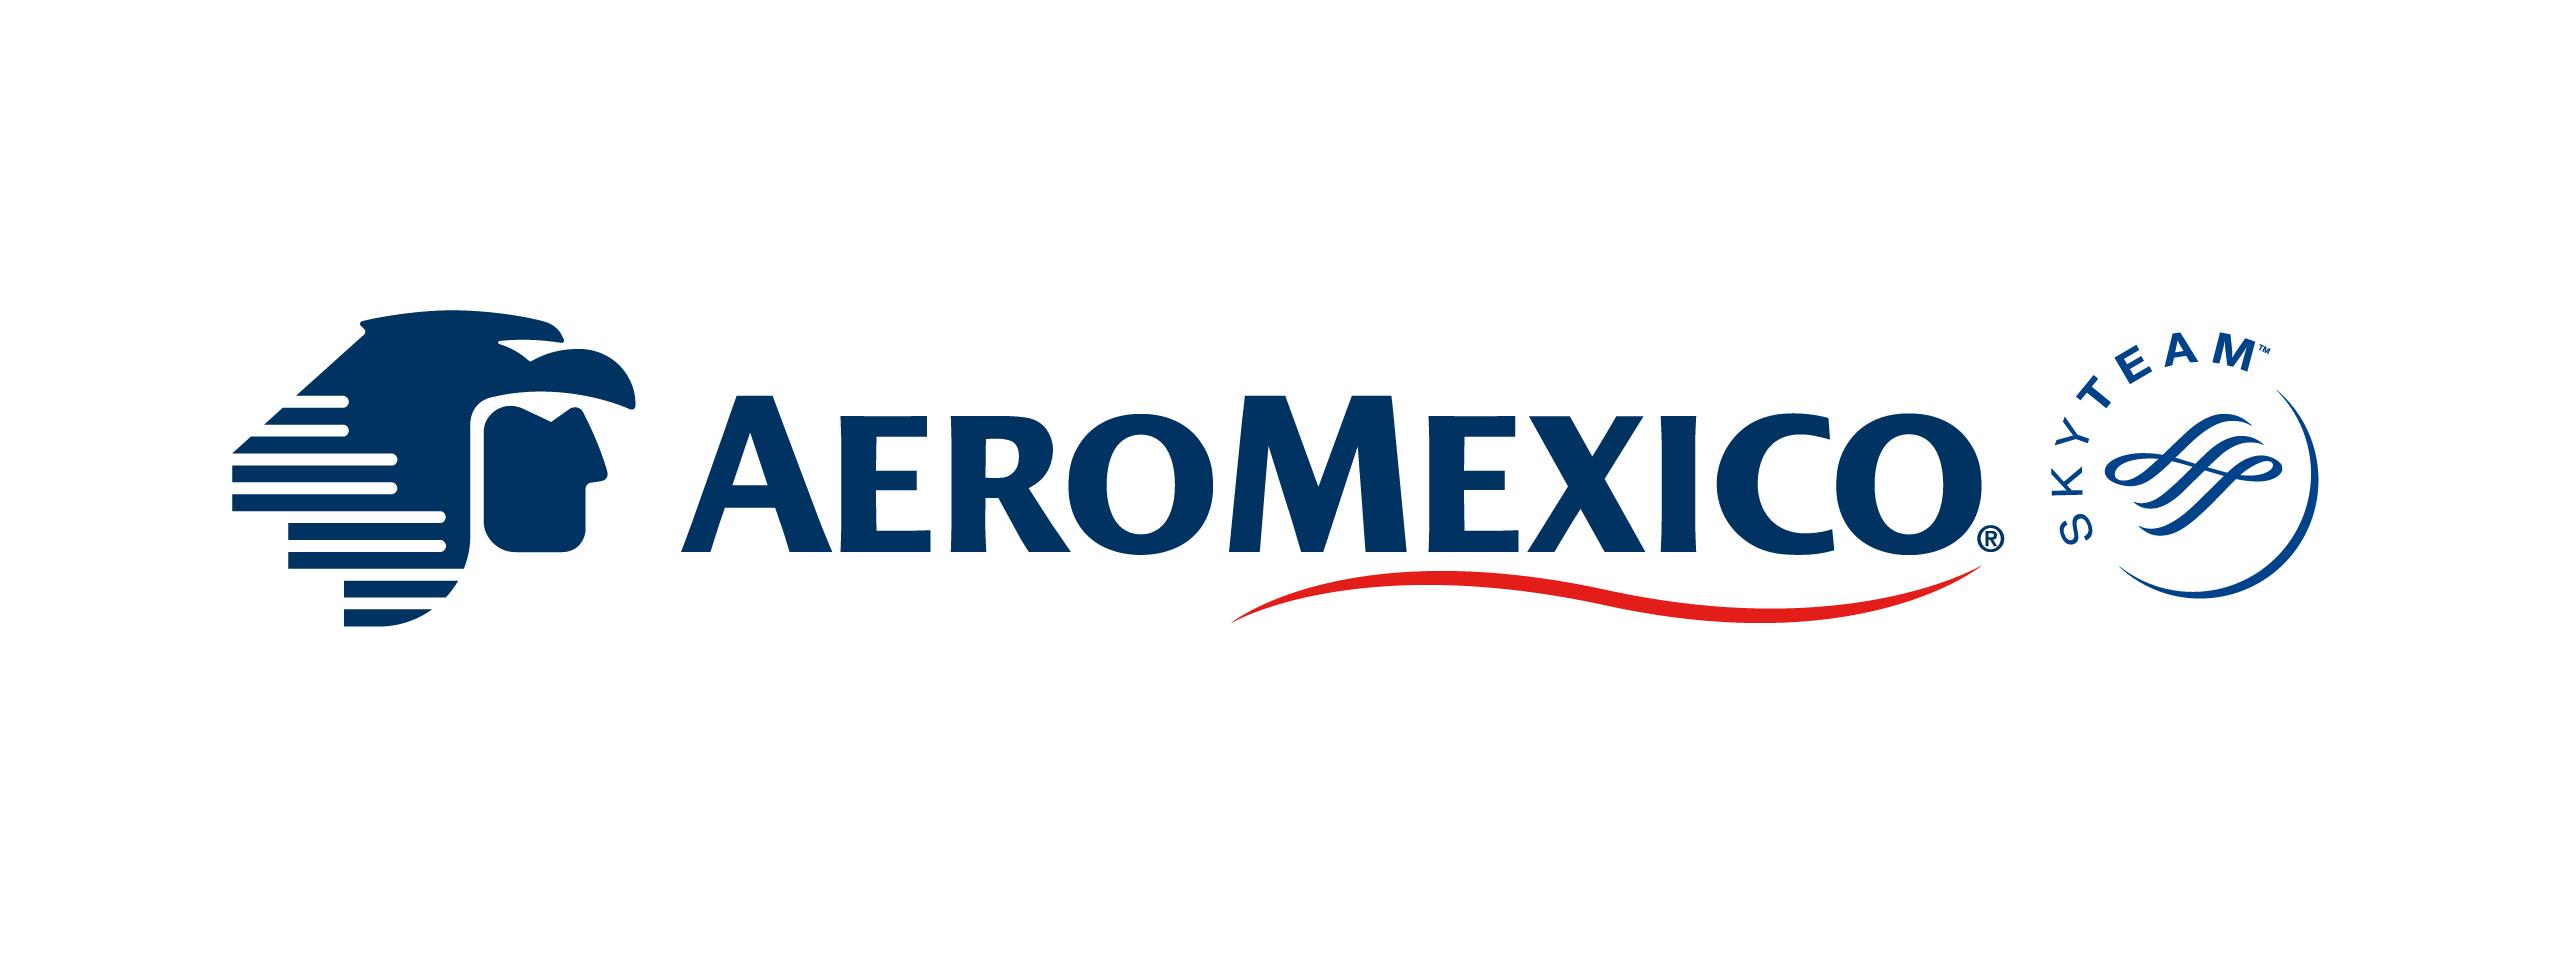 Aeromexico Logo - Aeroméxico Logo Legal Services of Mid Florida